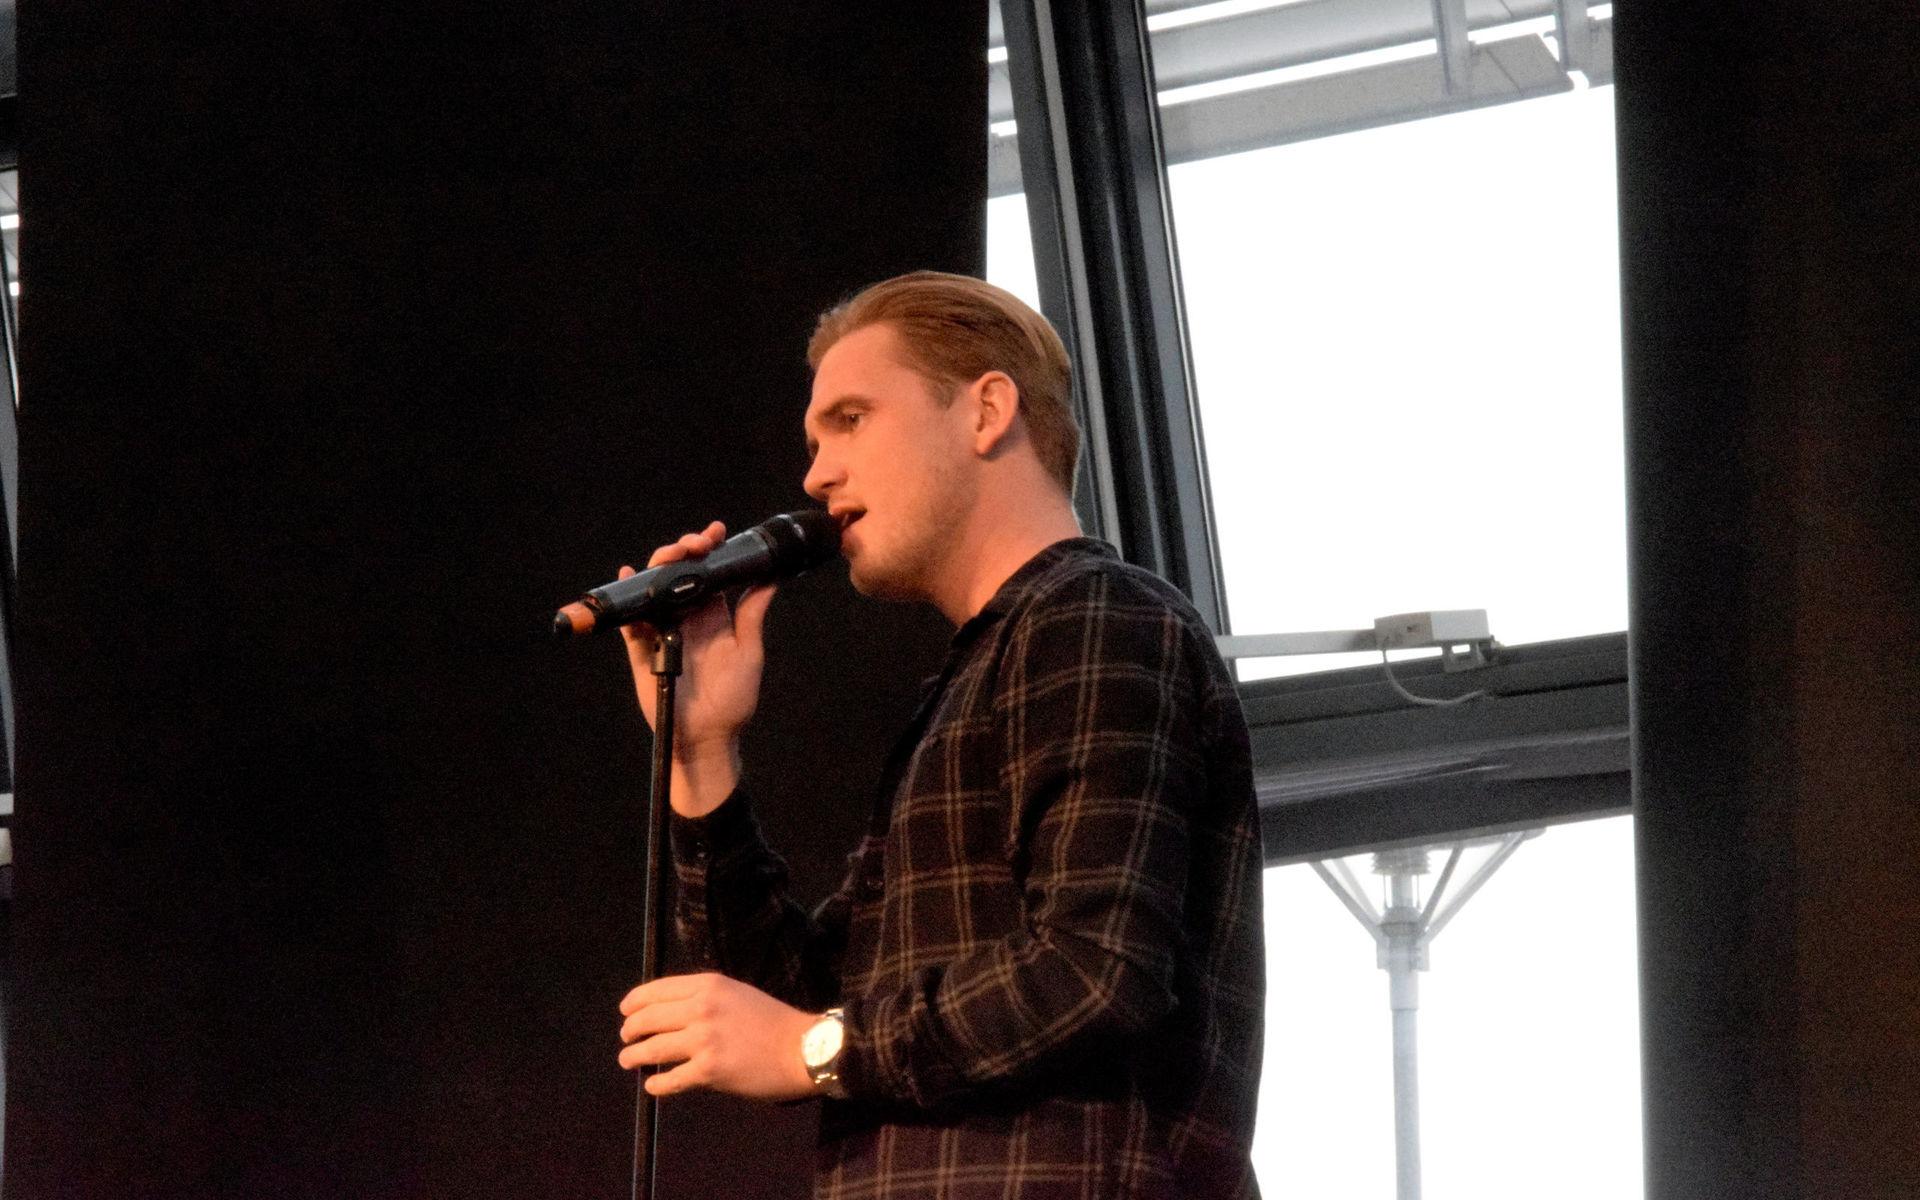 Förre Oddevoldspelaren Bragi Bergsson visade att han också kunde sjunga.